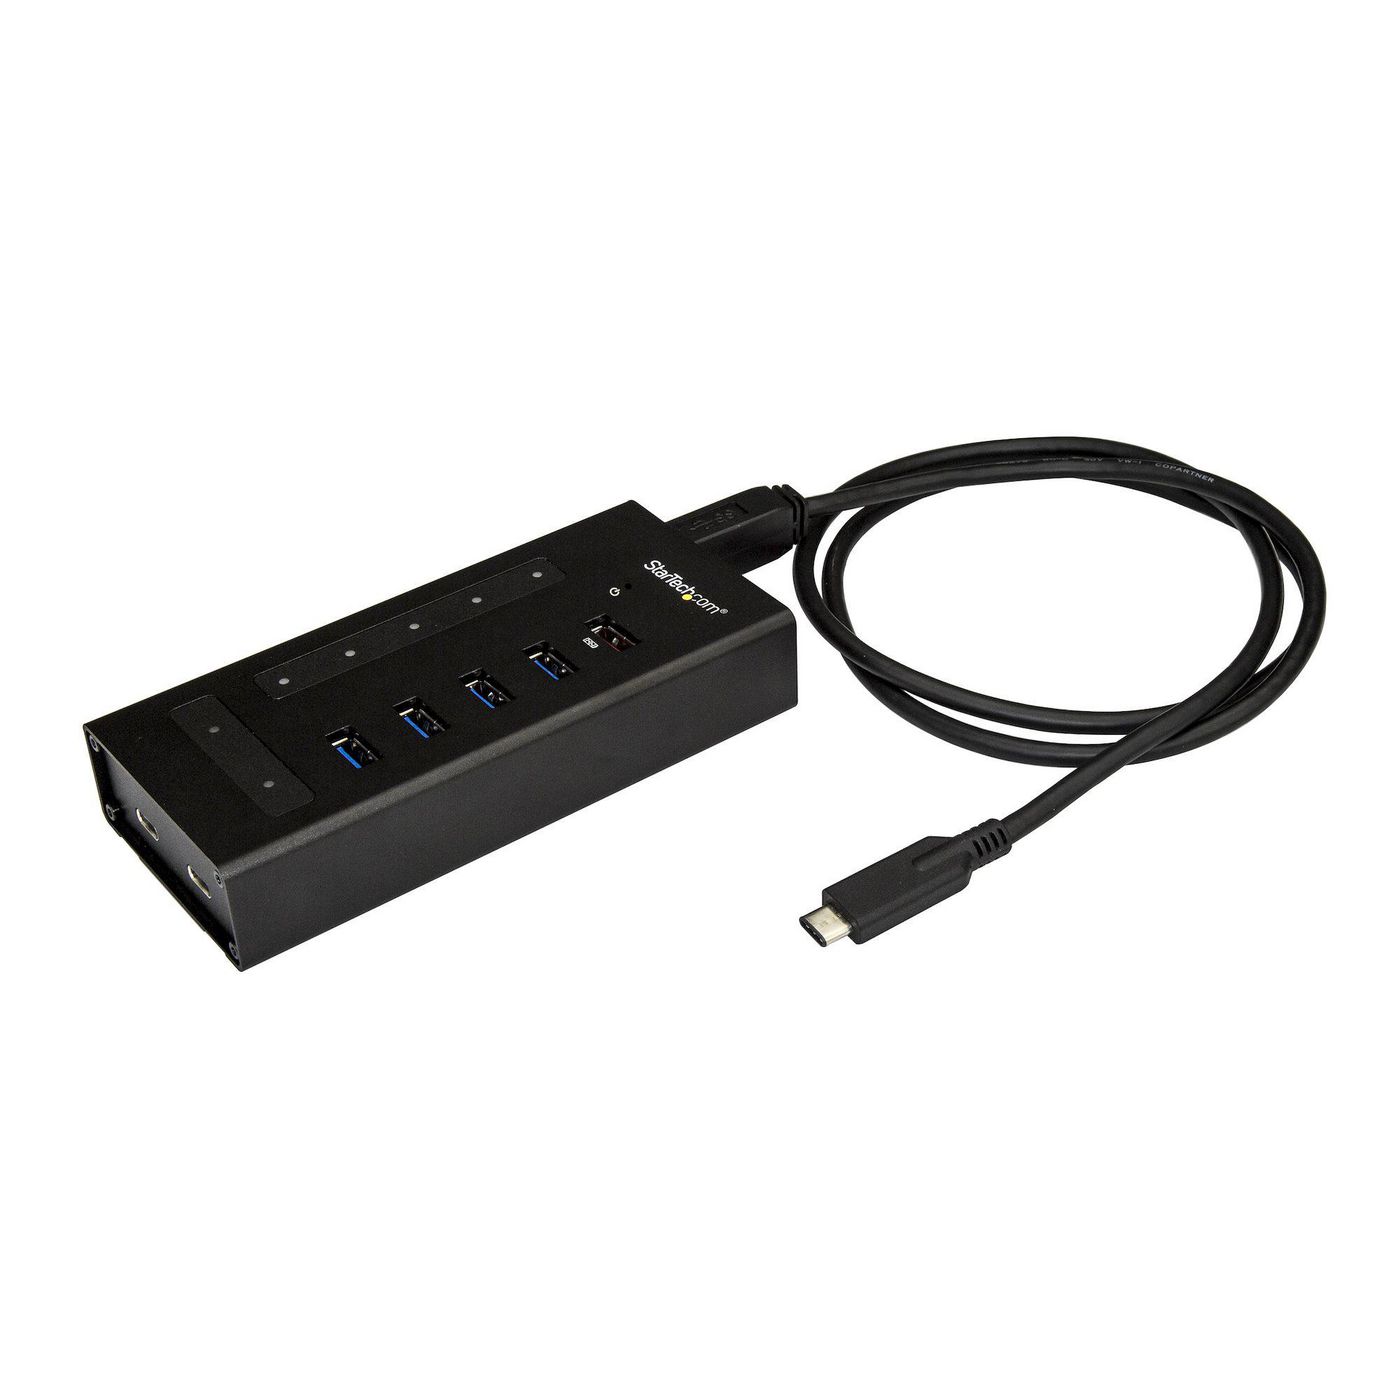 STARTECH.COM USB Hub 7 Port - Metall - USB-A zu 3x USB-C und 1x USB-C - USB 3.0 - Industrieller USB